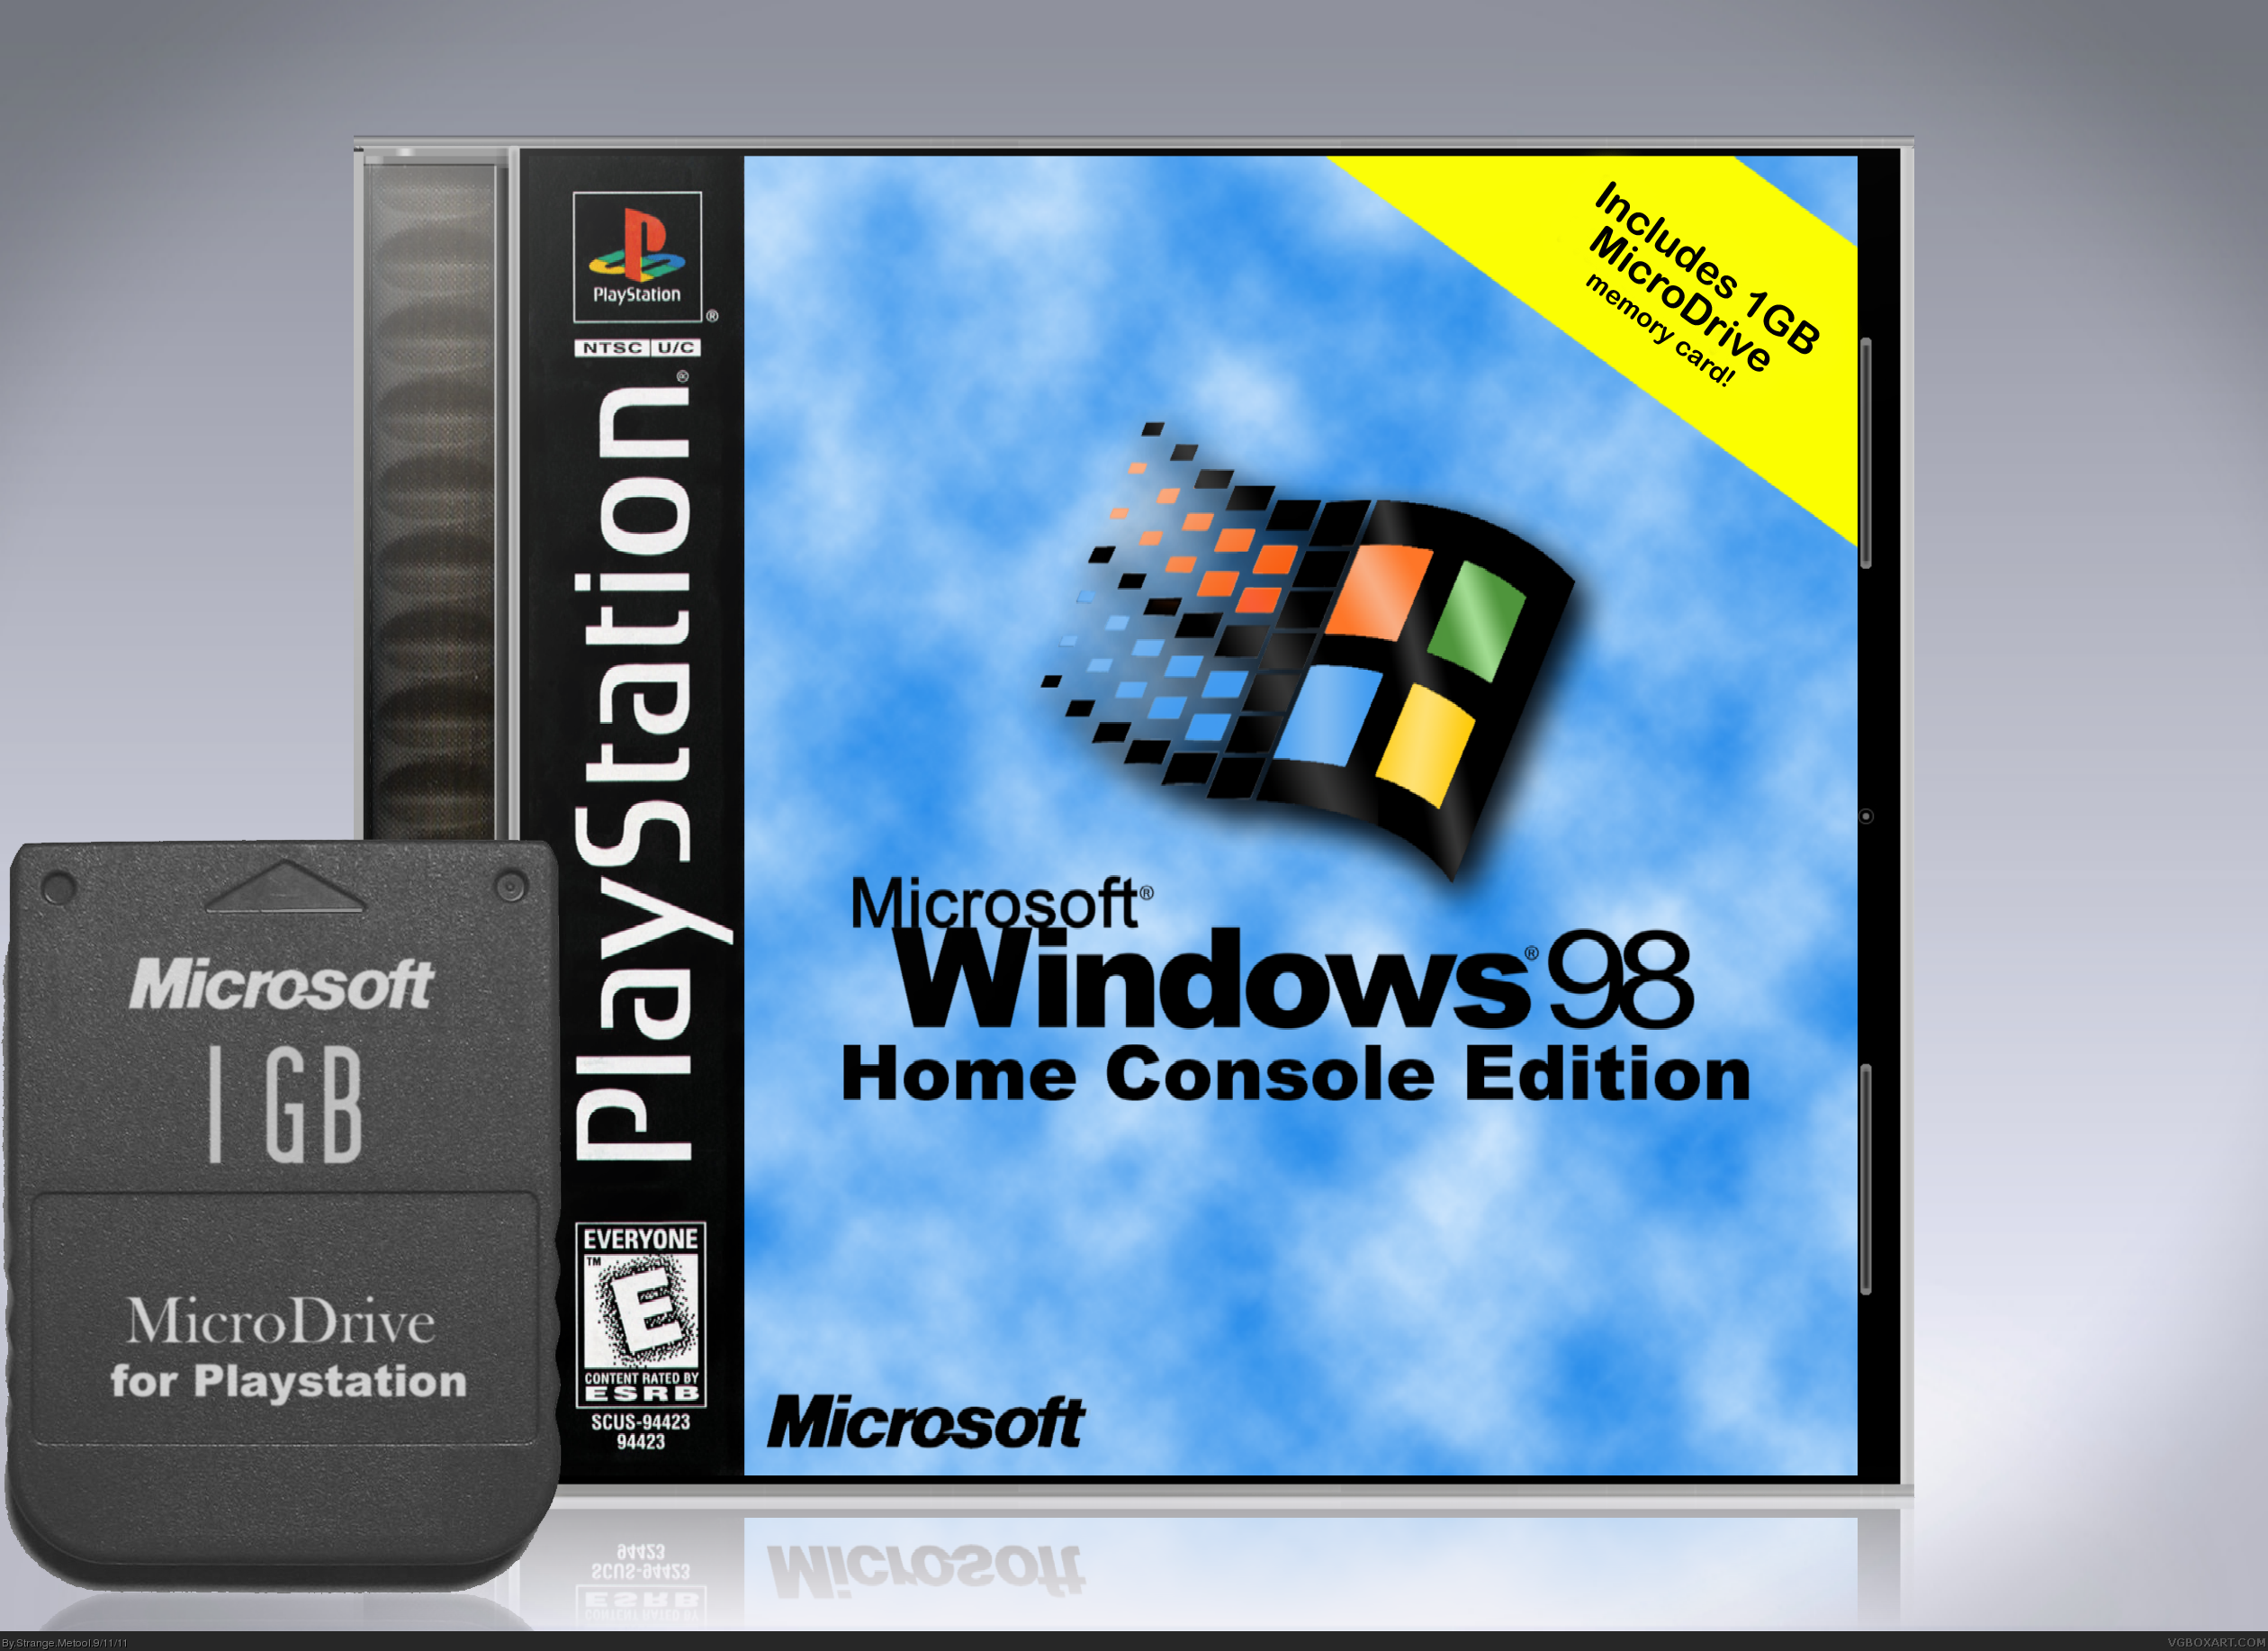 Windows 98: Home Console Edition box cover